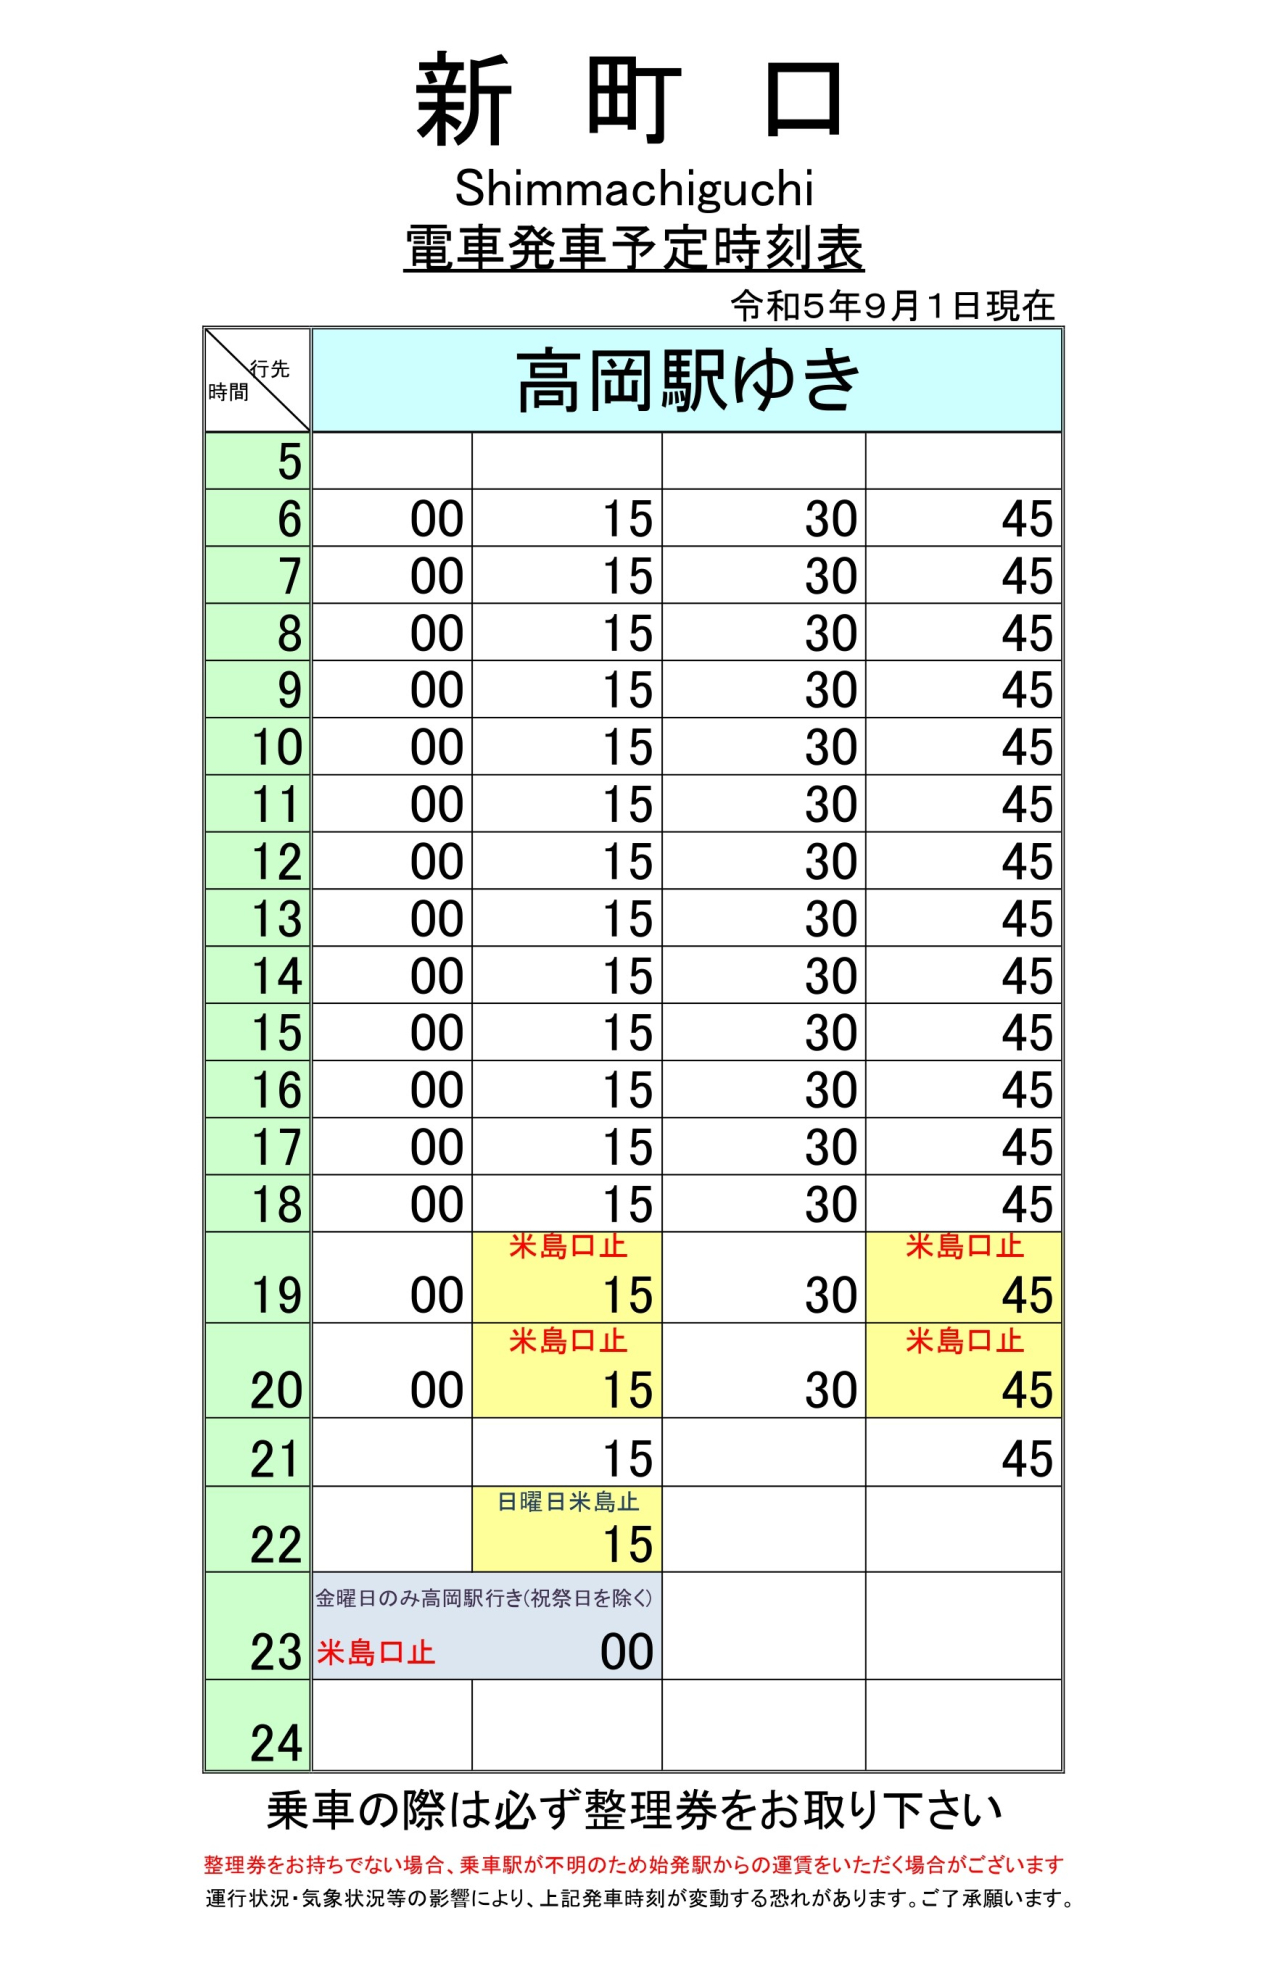 最新5.5.1改正各駅時刻表(新町口上り)_page-0001